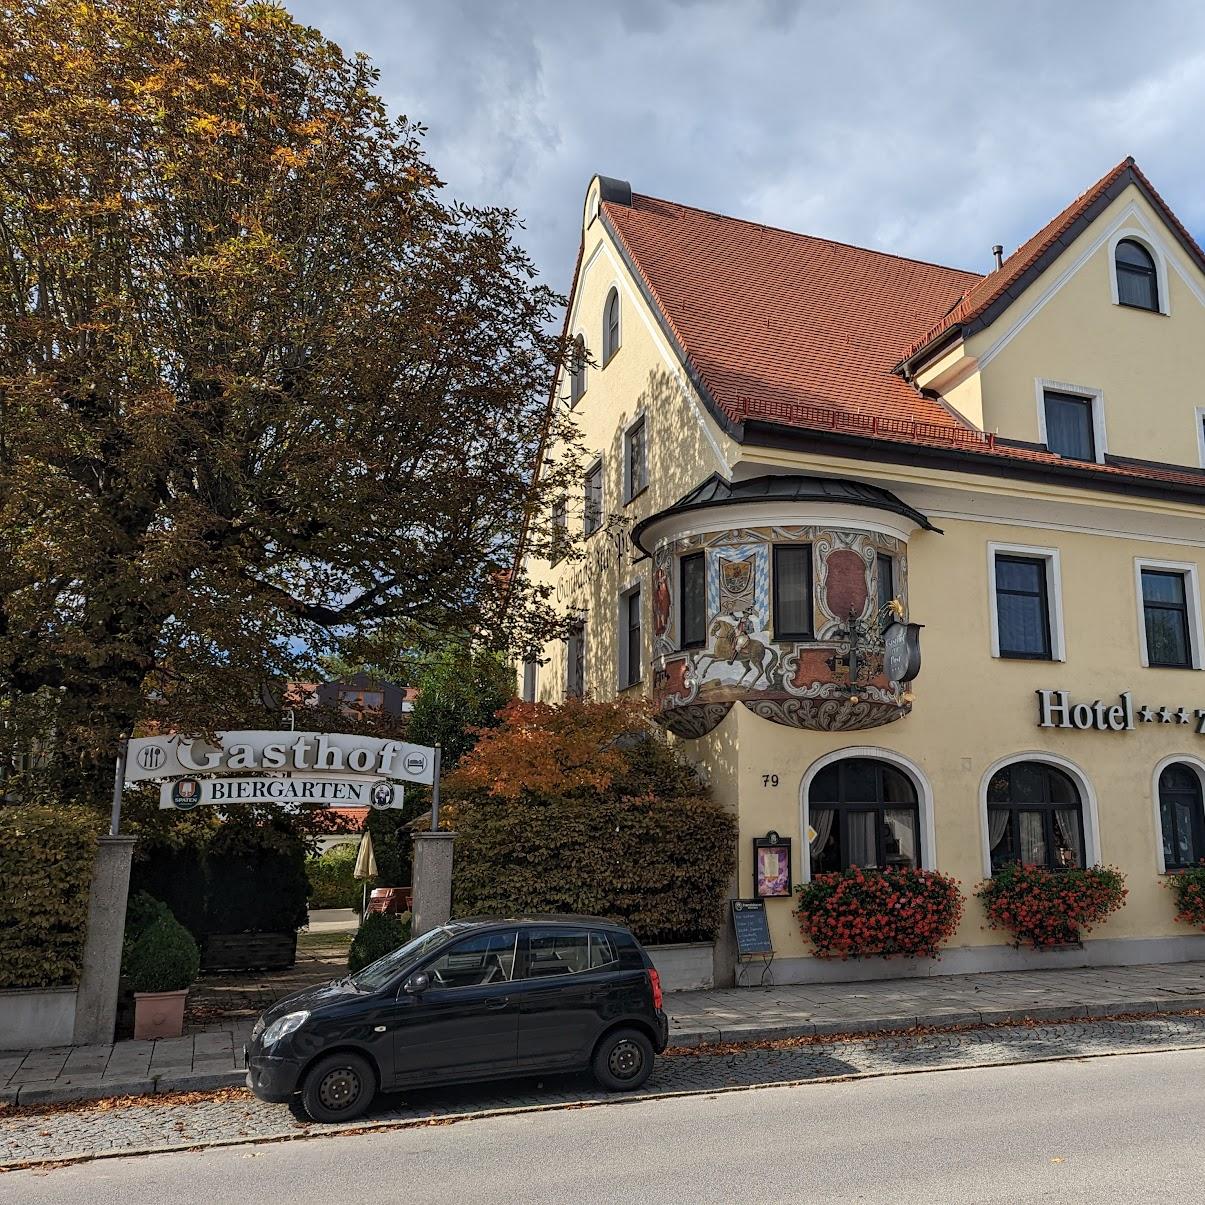 Restaurant "Hotel Gasthof zur Post" in Unterföhring